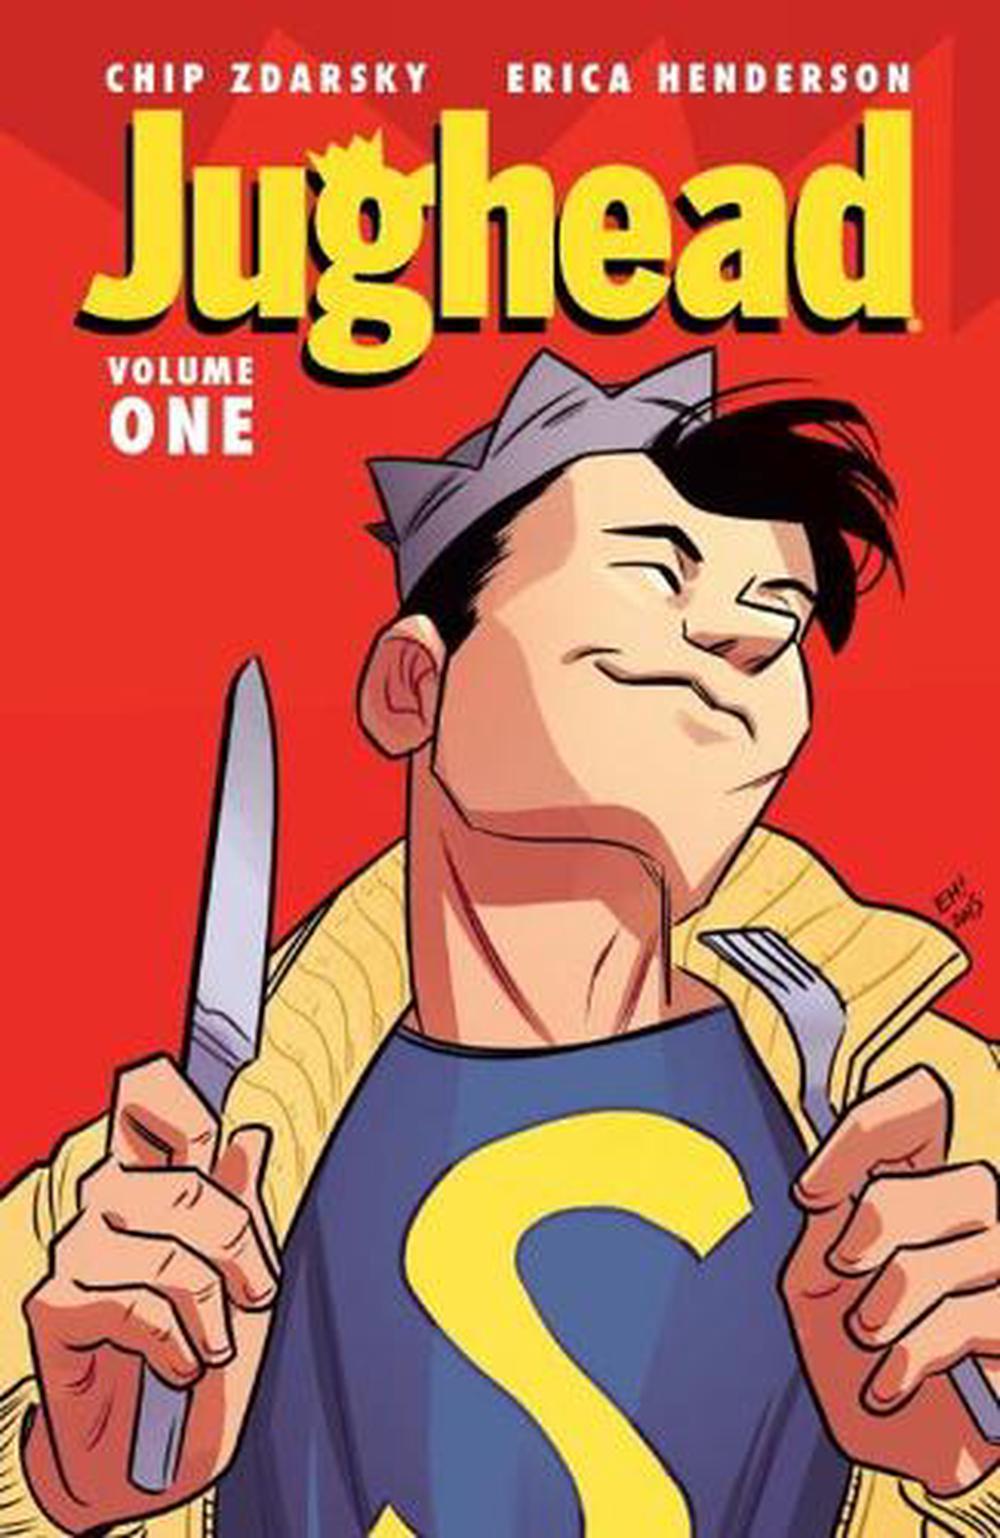 Jughead, Vol. 1 by Chip Zdarsky